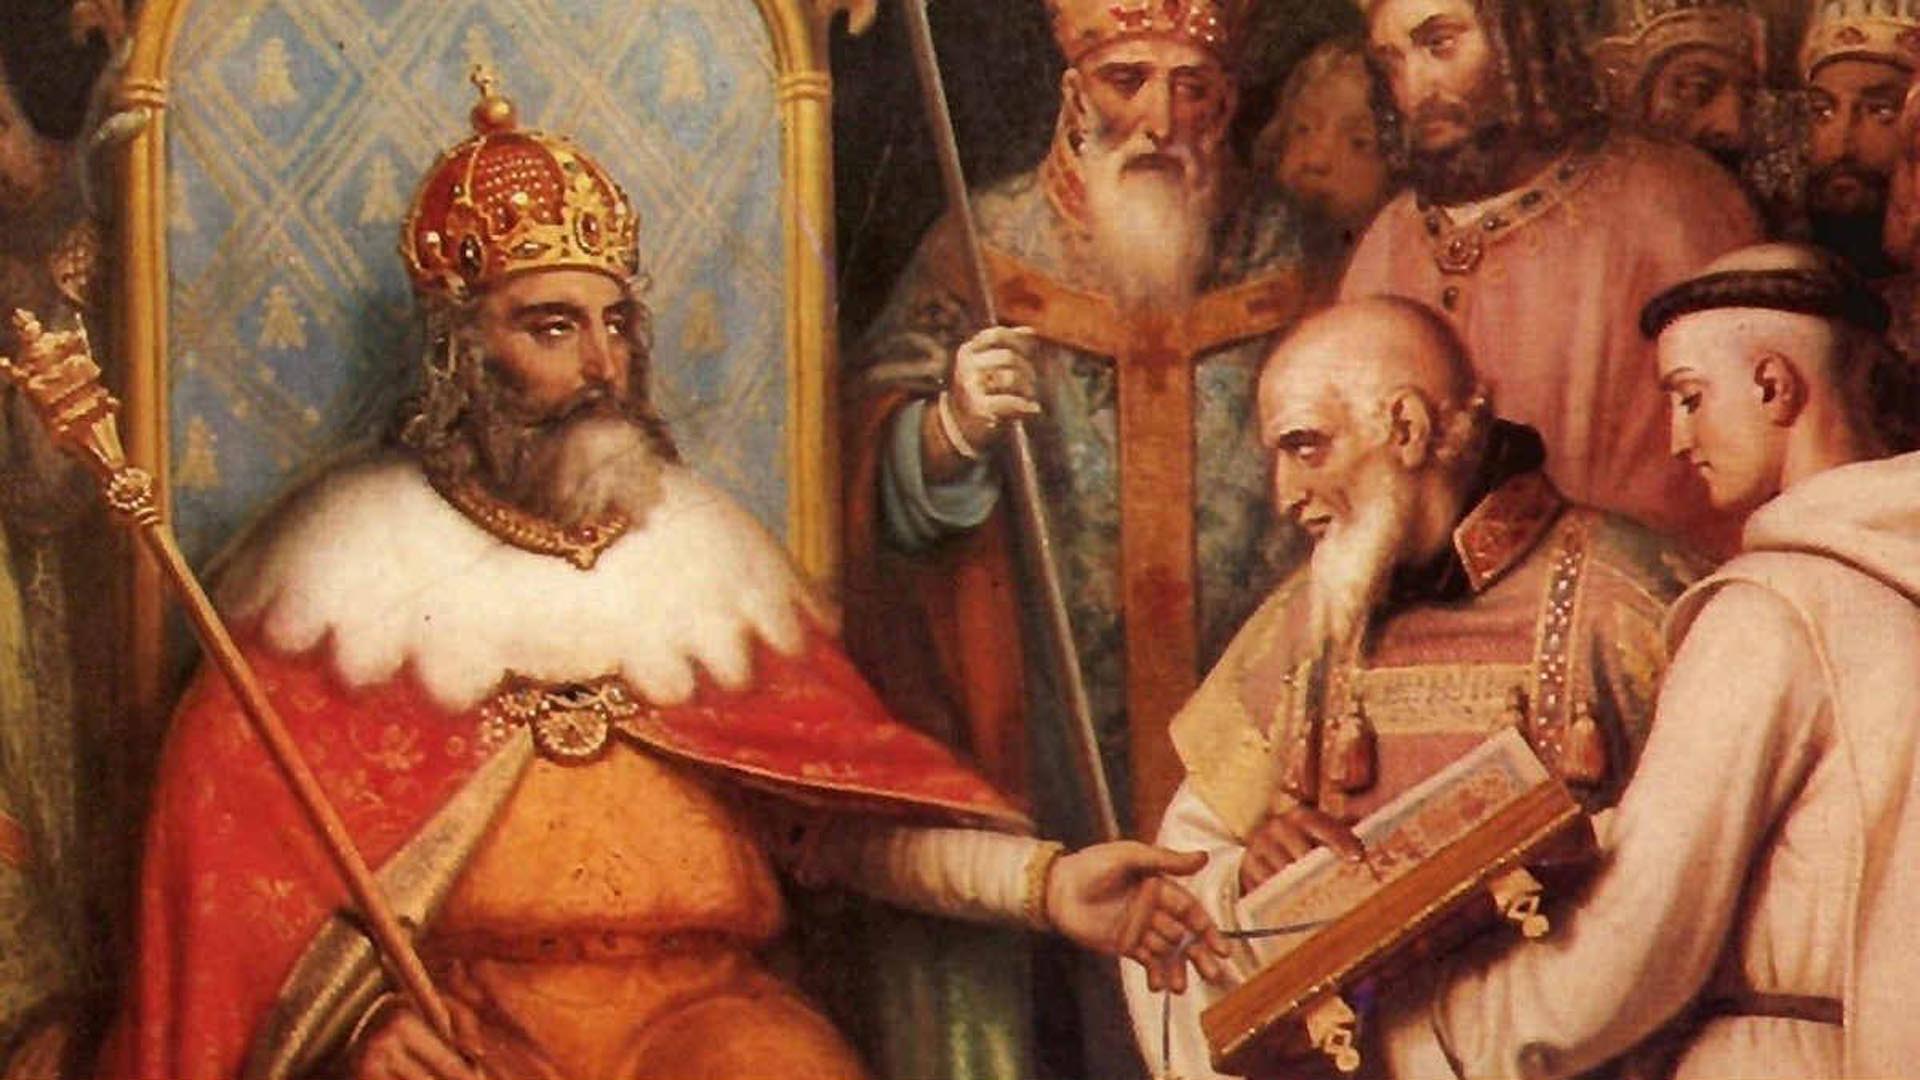 La canonización de Carlomagno fue obra del antipapa Pascual II. Aunque la Iglesia no la ratificó, toleró el culto al Emperador